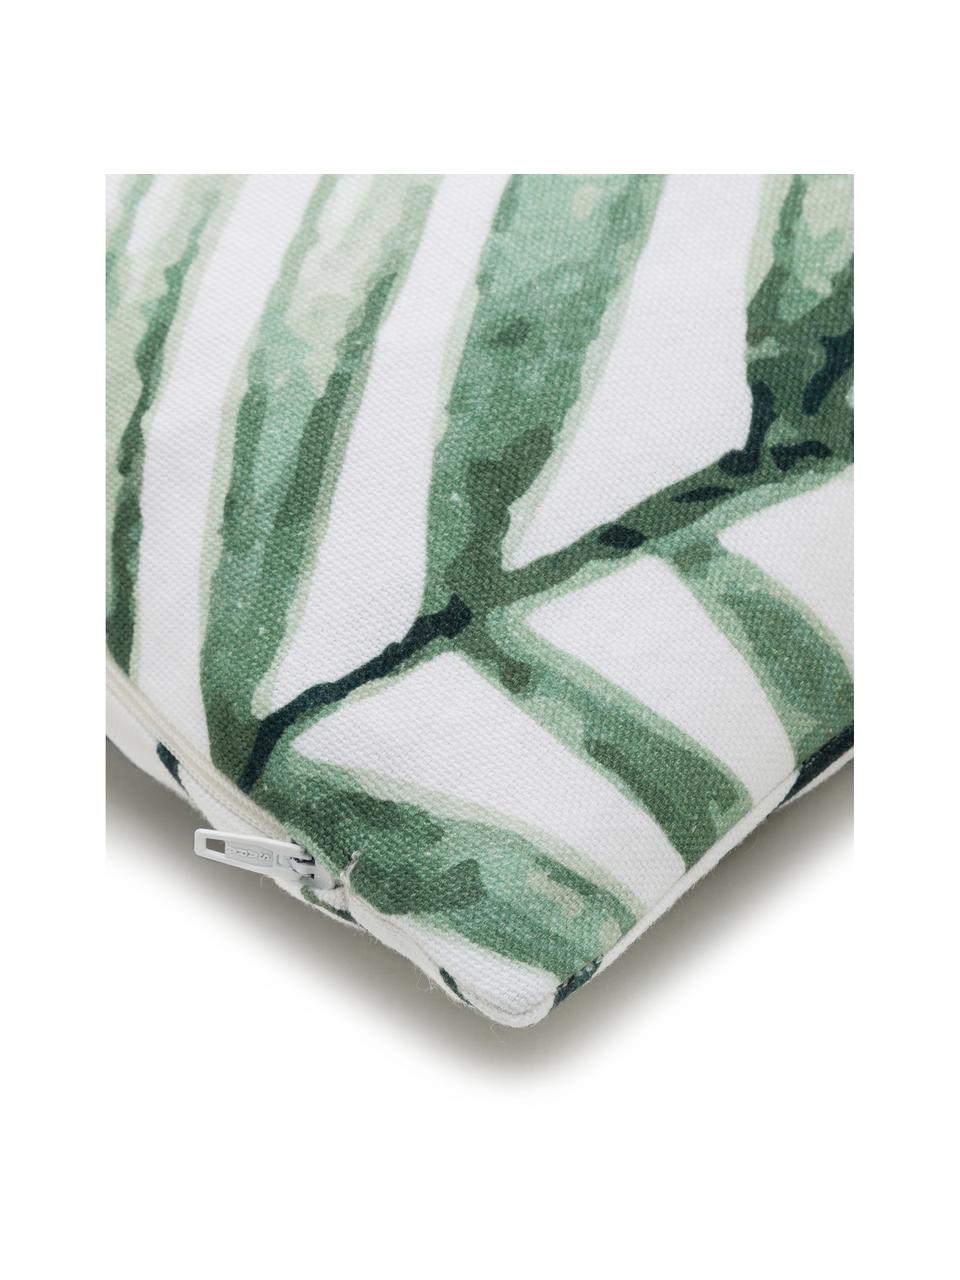 Copricuscino in cotone con motivo a foglie Coast, 100% cotone, Bianco, tonalità verdi, Larg. 40 x Lung. 40 cm